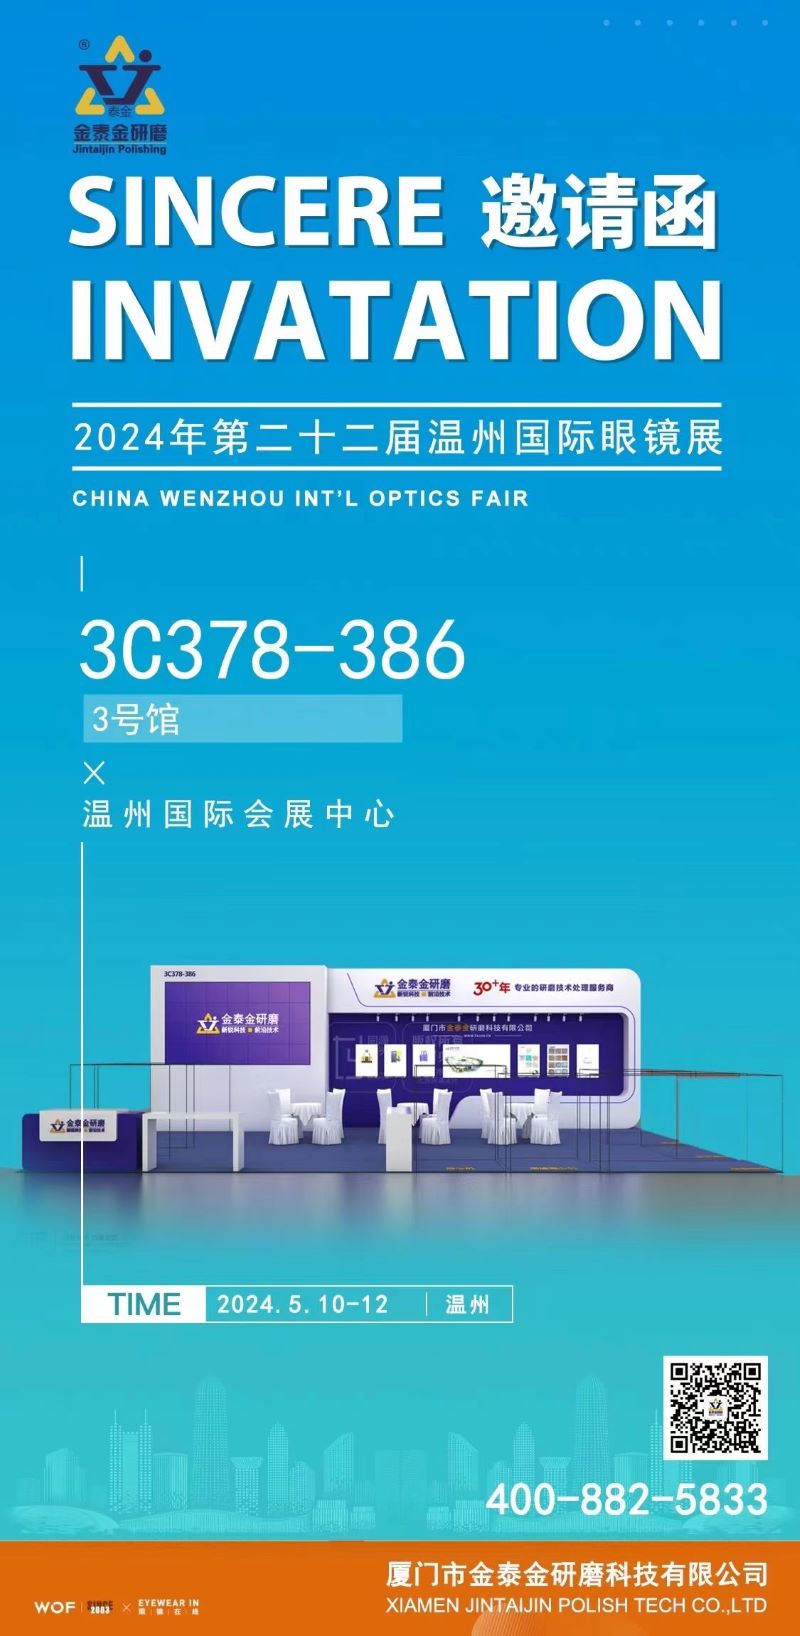 Jintaijin Polishing Technology Co. kündigt Teilnahme an der Wenzhou International Optics Fair 2024 an